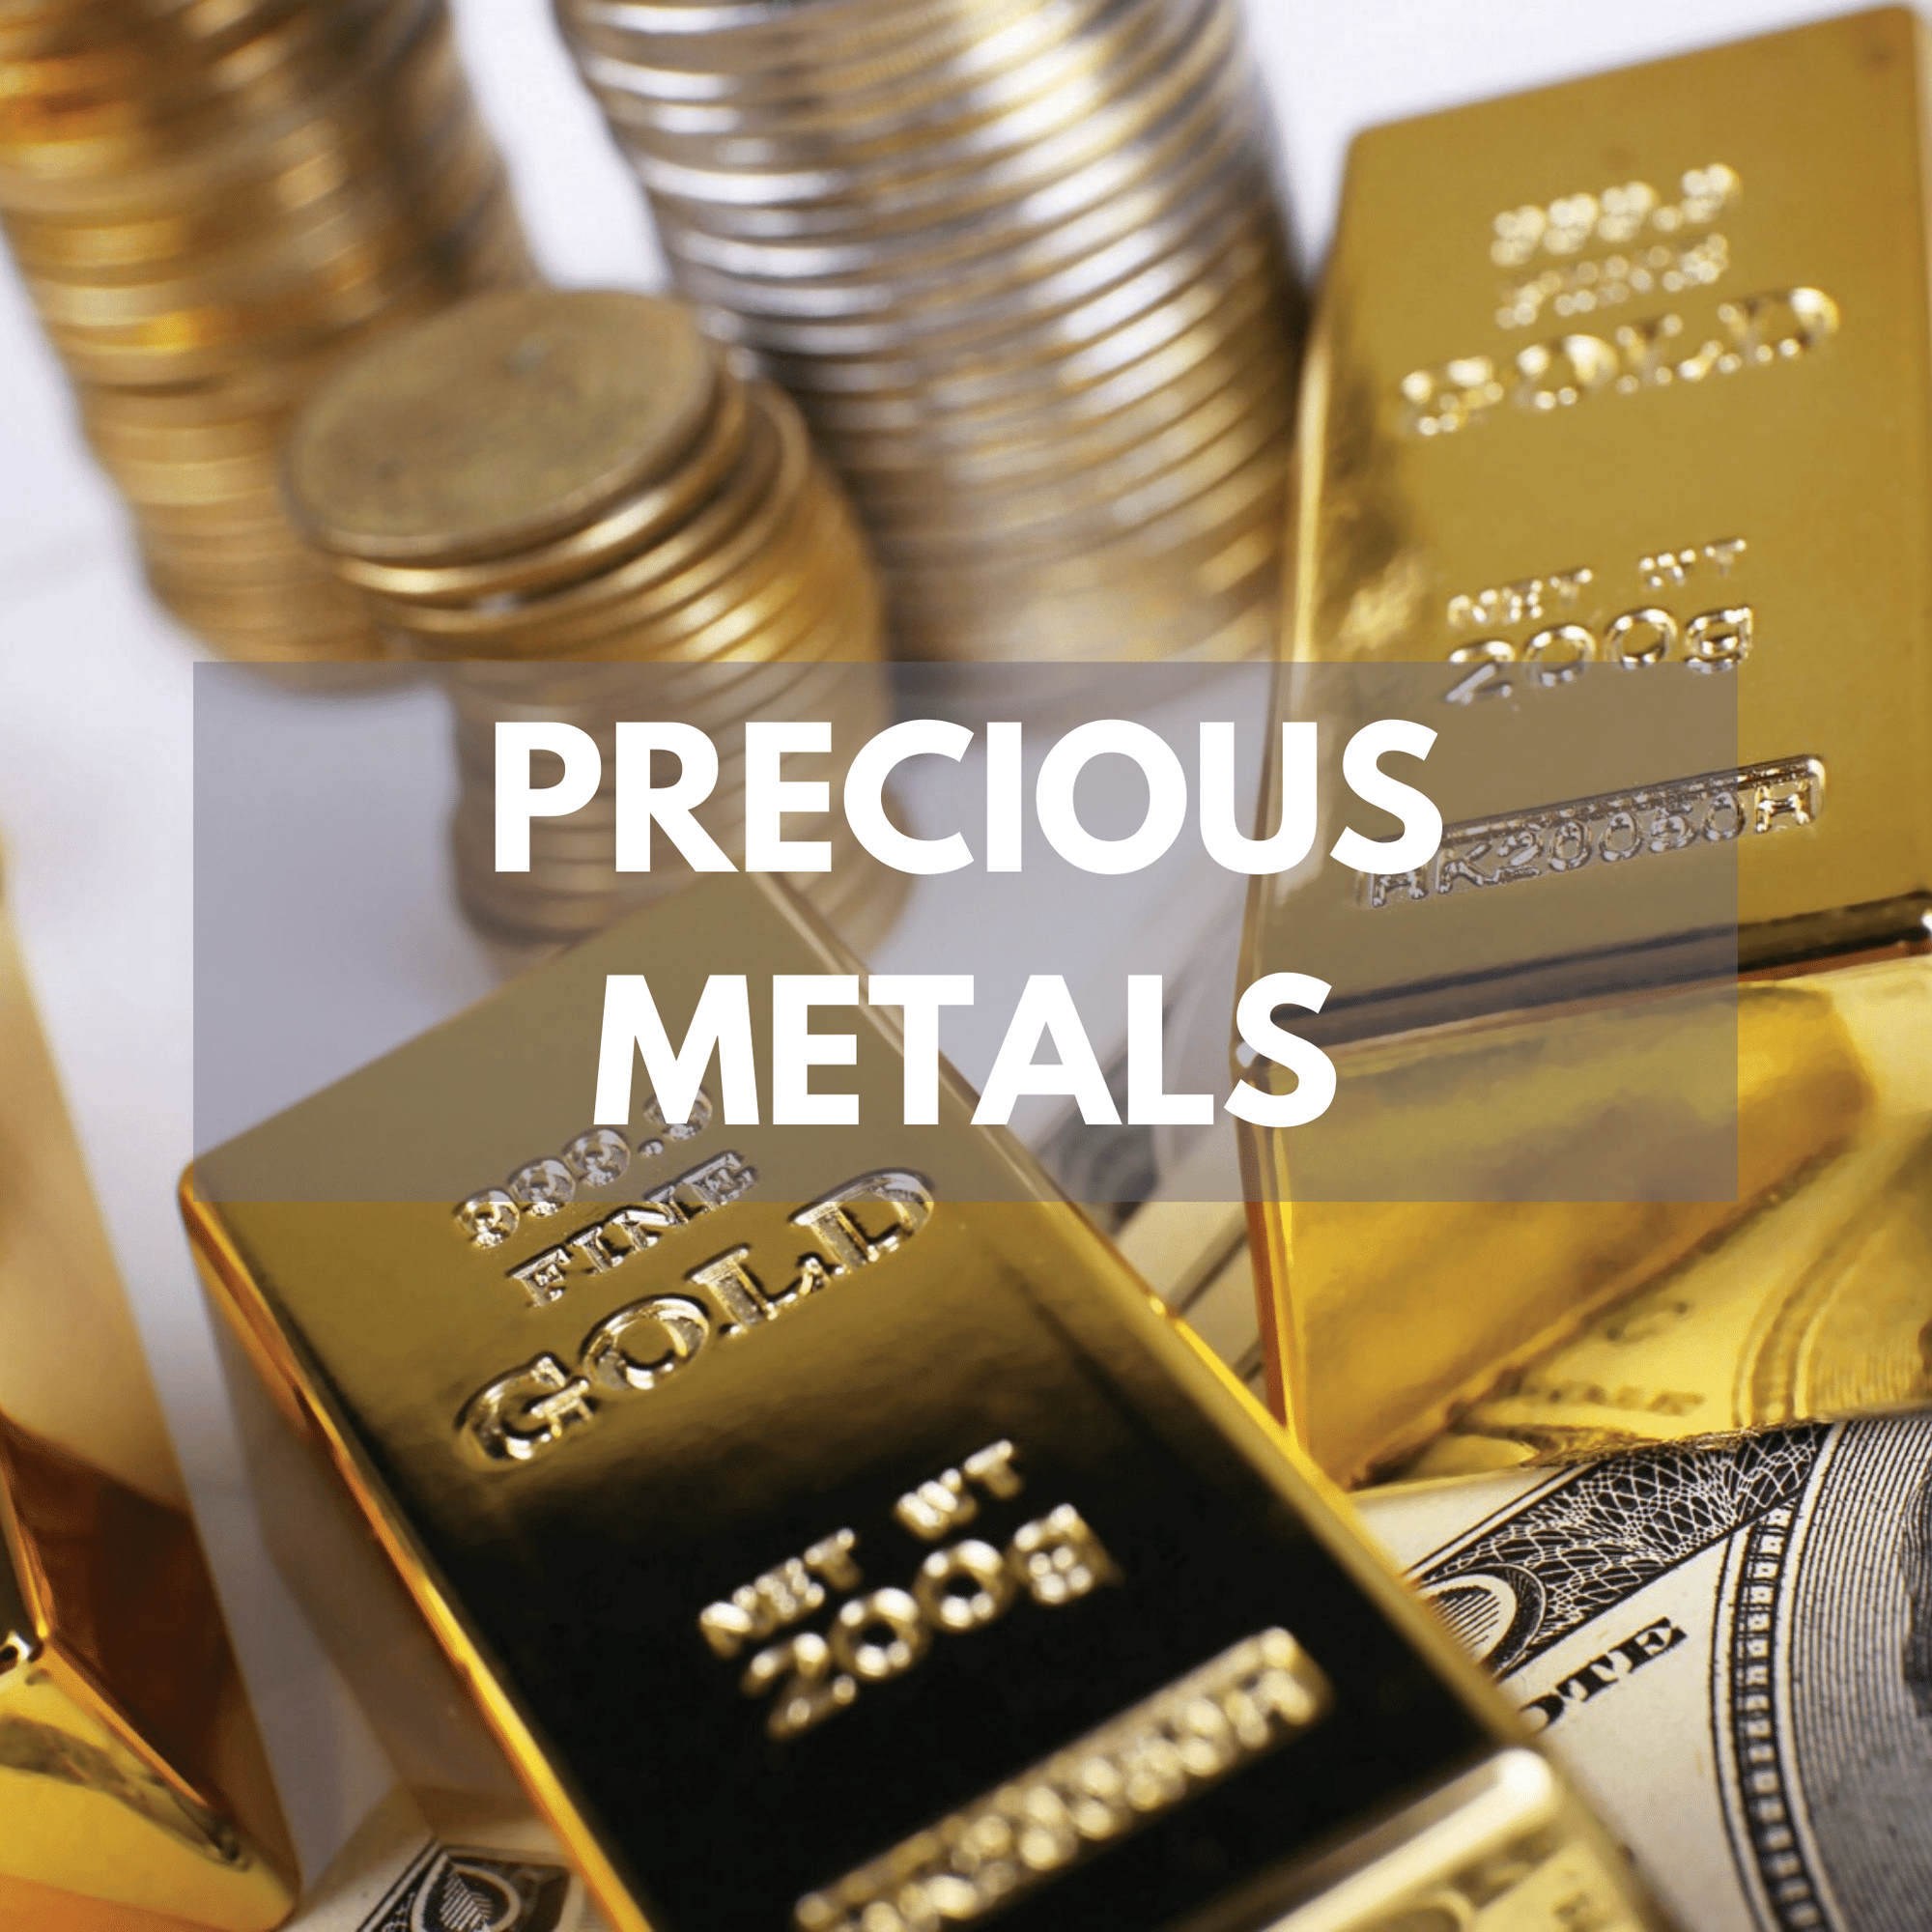 Precious metals